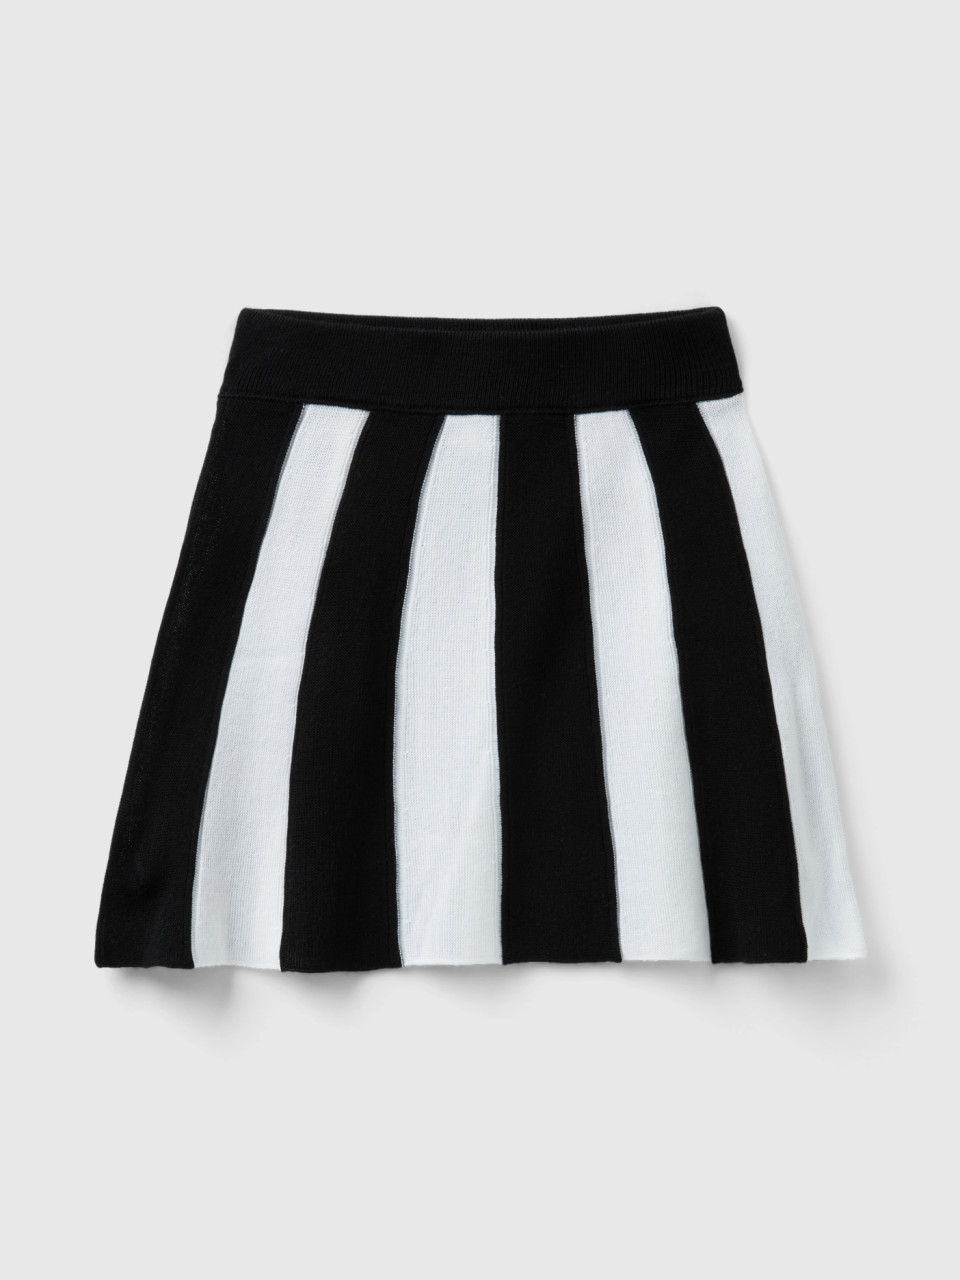 Benetton, Skirt With Vertical Stripes, Black, Kids